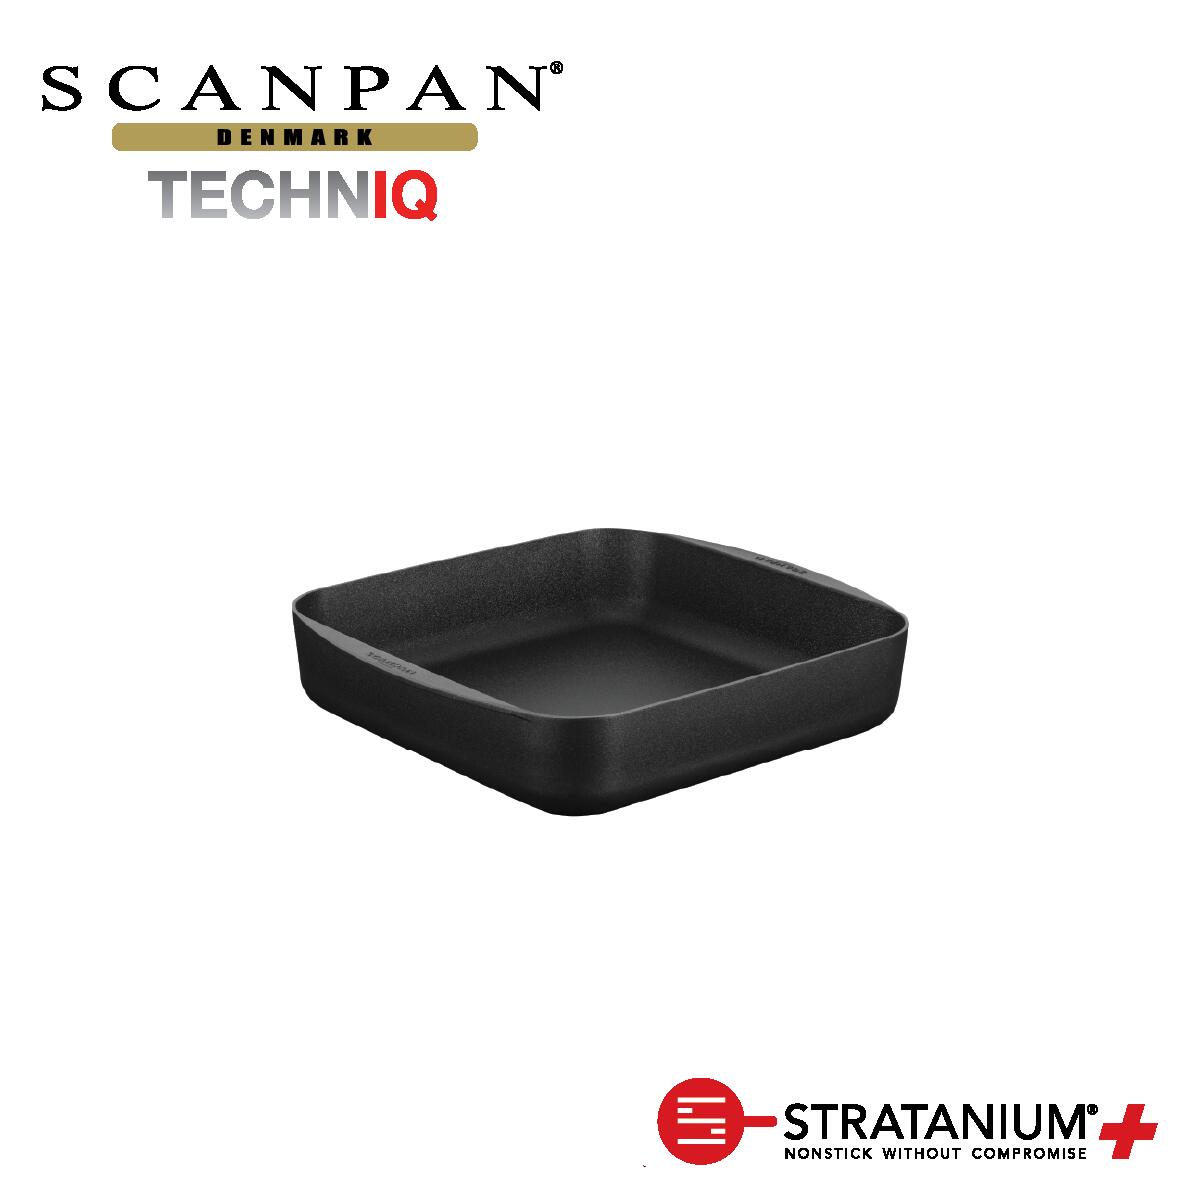 スキャンパン TechnIQシリーズ スクエア ロースティングパン 28x28cm ロースティングパン 四角 ロースター 大皿料理 環境に配慮 オーブン調理 ノンスティック 安全なフライパン フッ素加工 SCANPAN デンマーク STRATANIUM+